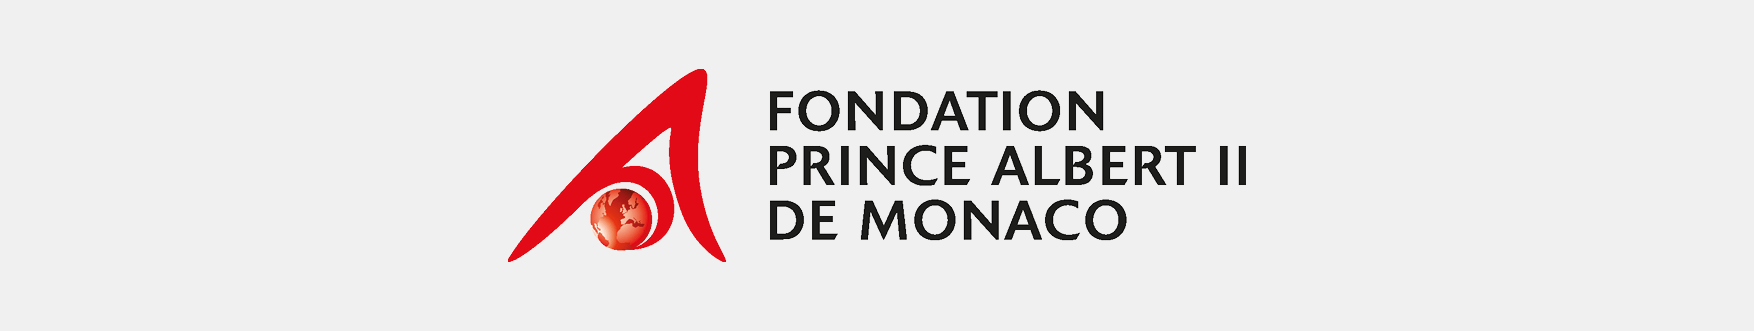 logo fondation prince albert II de monaco